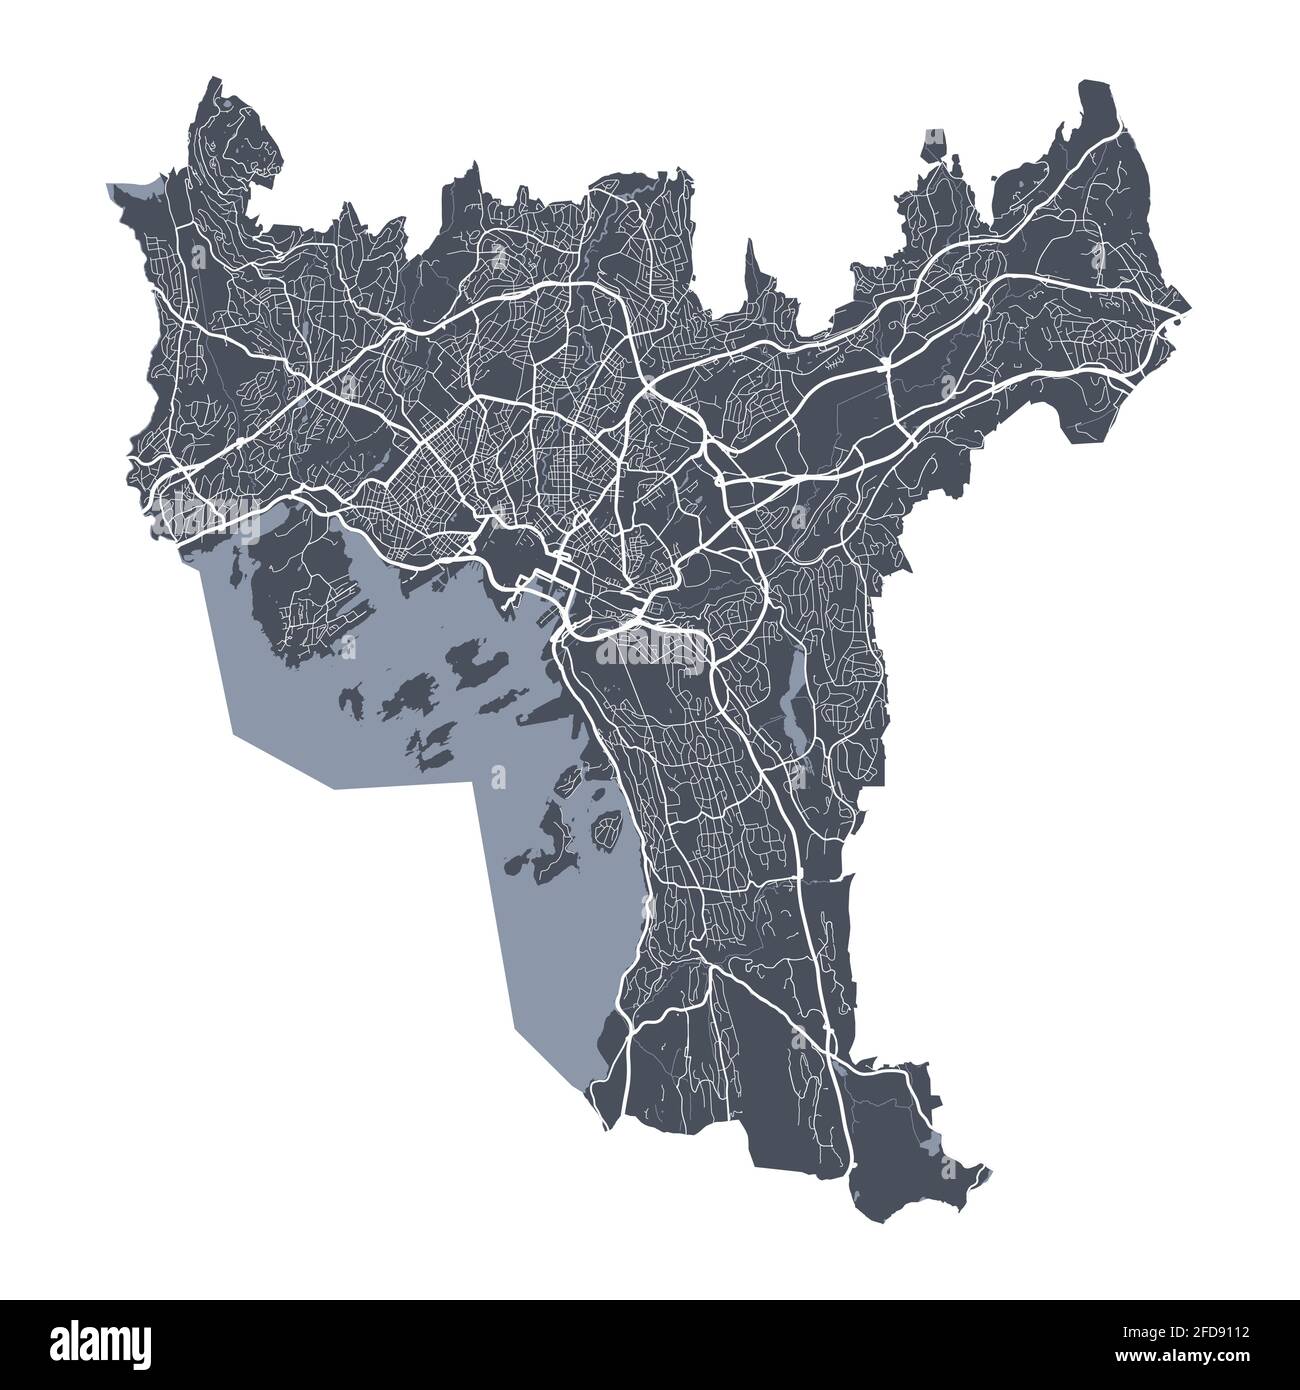 Plan d'Oslo. Carte vectorielle détaillée de la zone administrative d'Oslo. Vue sur l'aria métropolitain avec affiche CityScape. Terre sombre avec rues blanches, routes et avenu Illustration de Vecteur